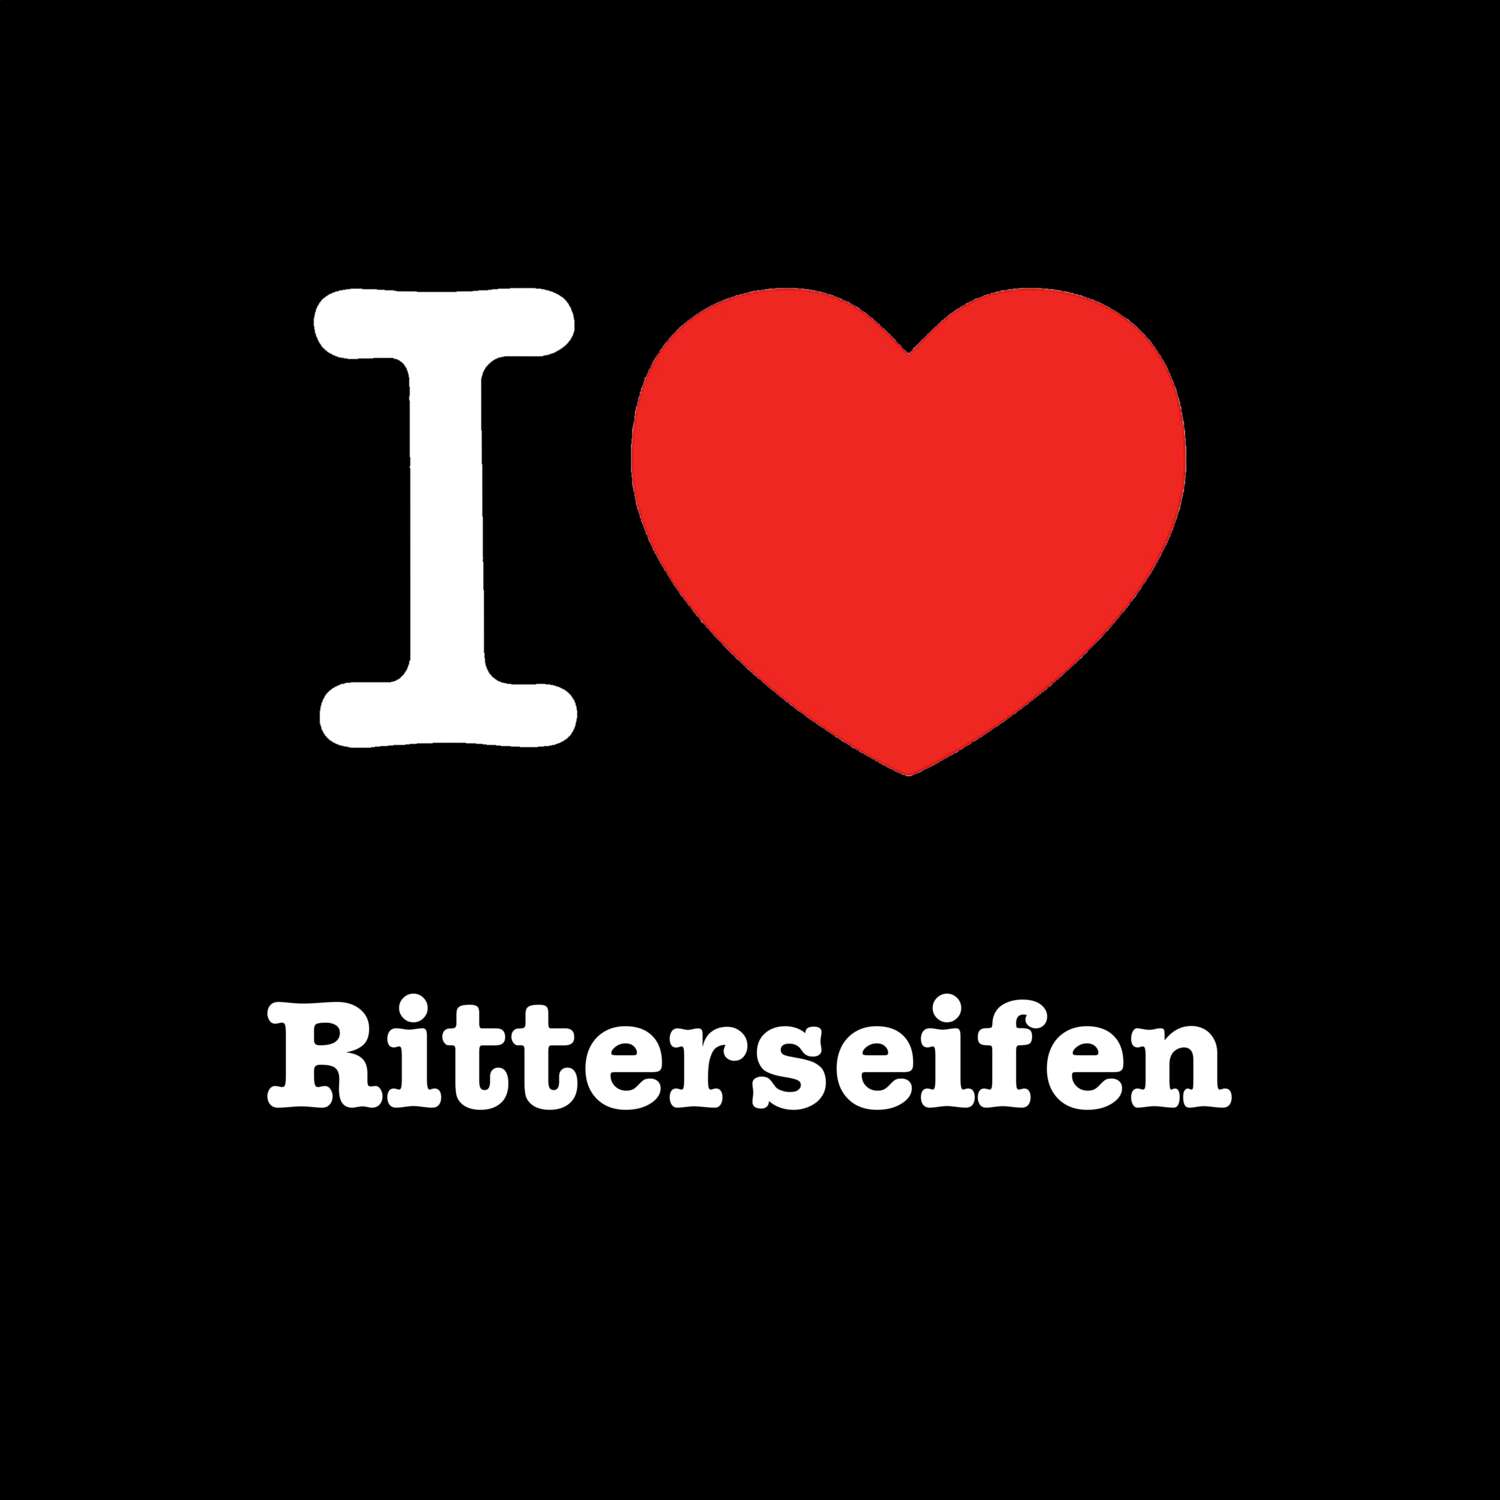 Ritterseifen T-Shirt »I love«